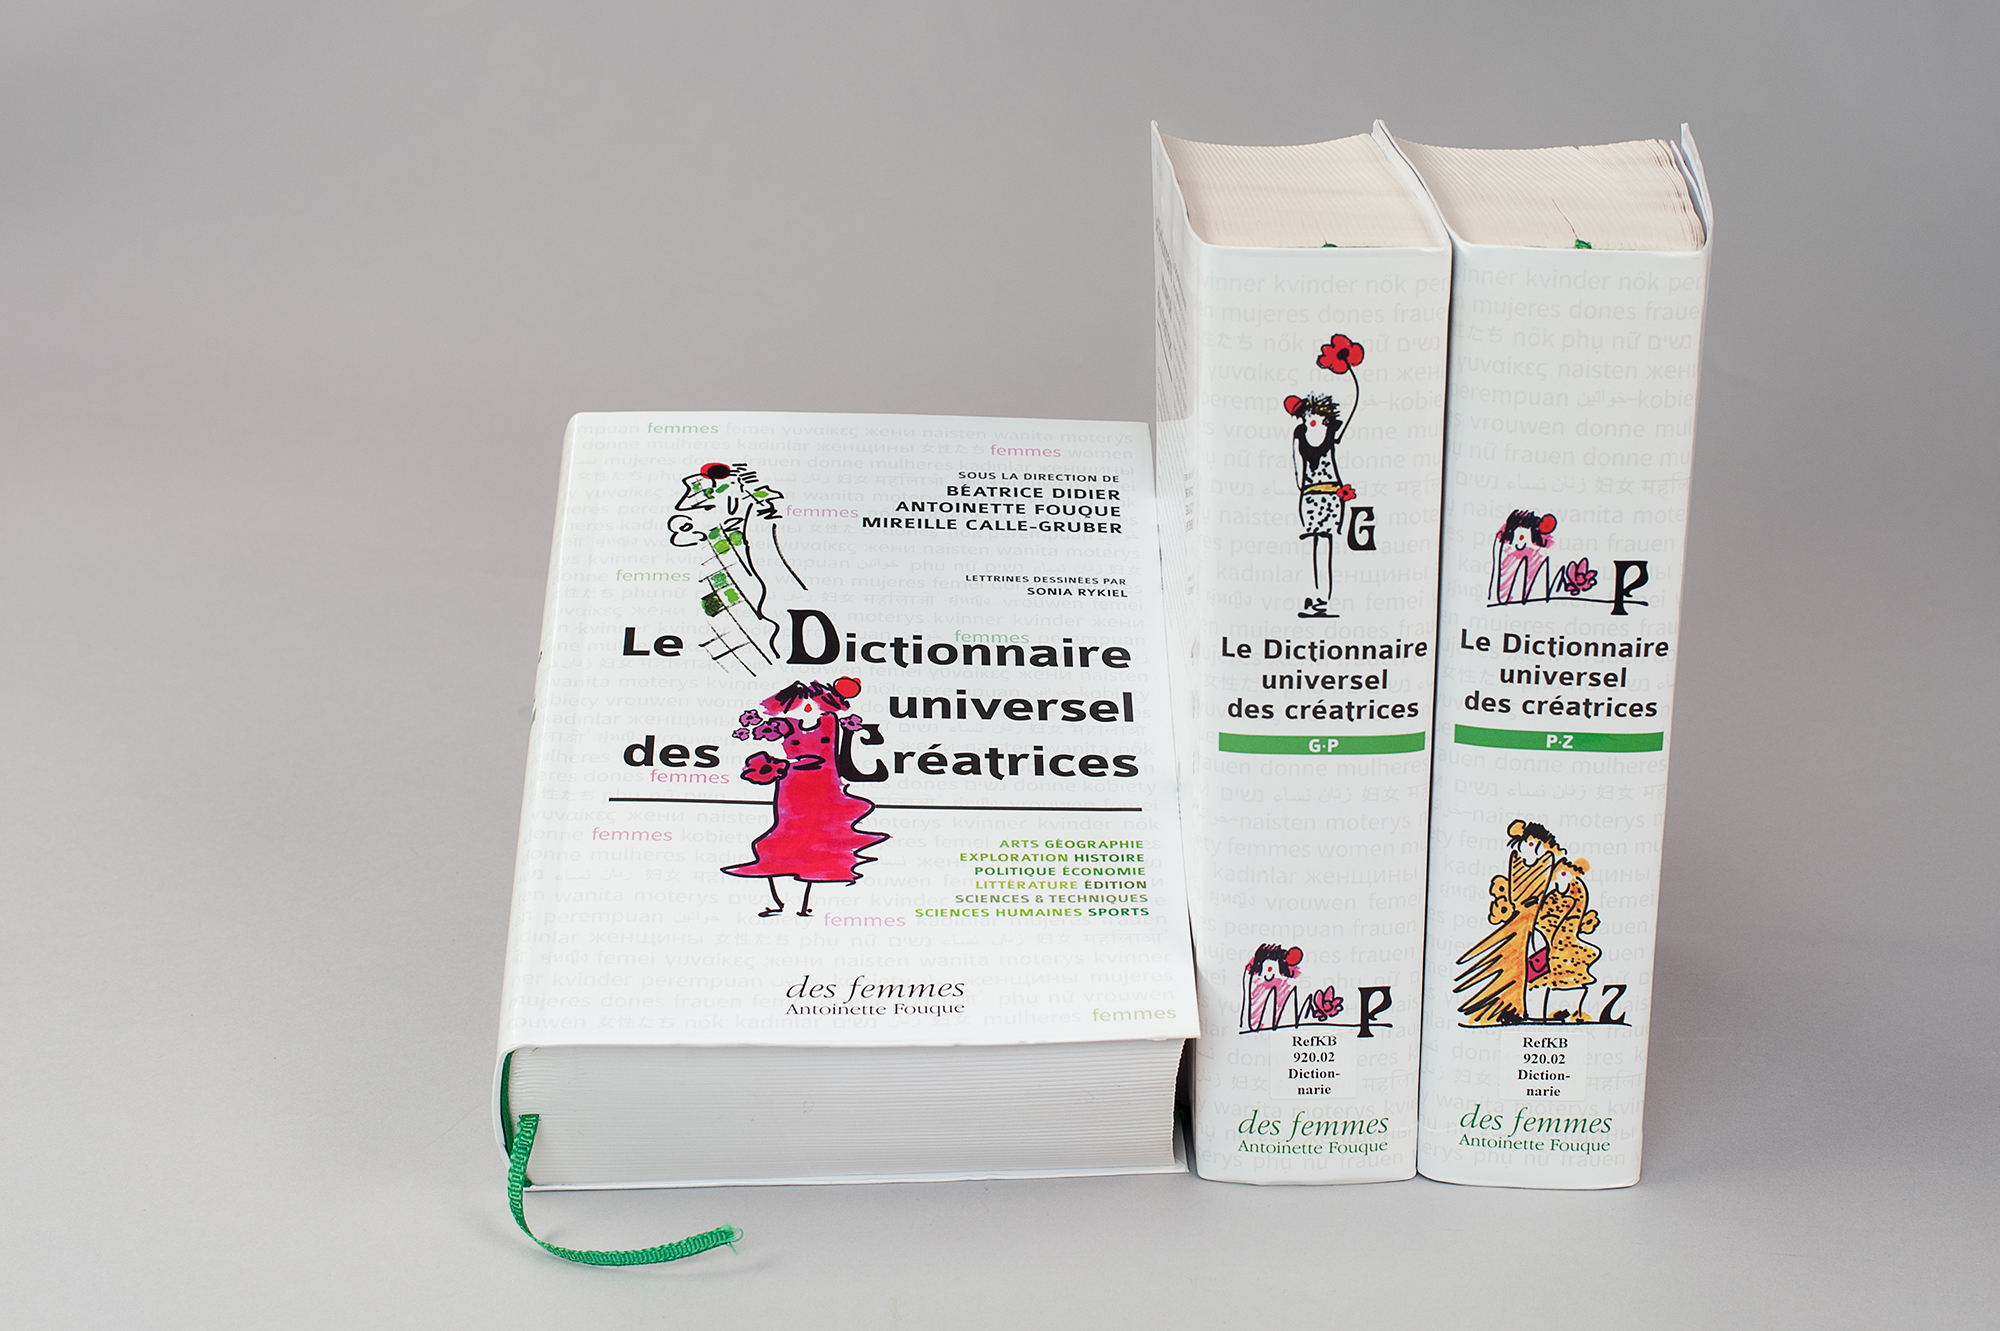 Tecknade figurer på omslaget till ett franskt kvinnohistoriskt lexikon.